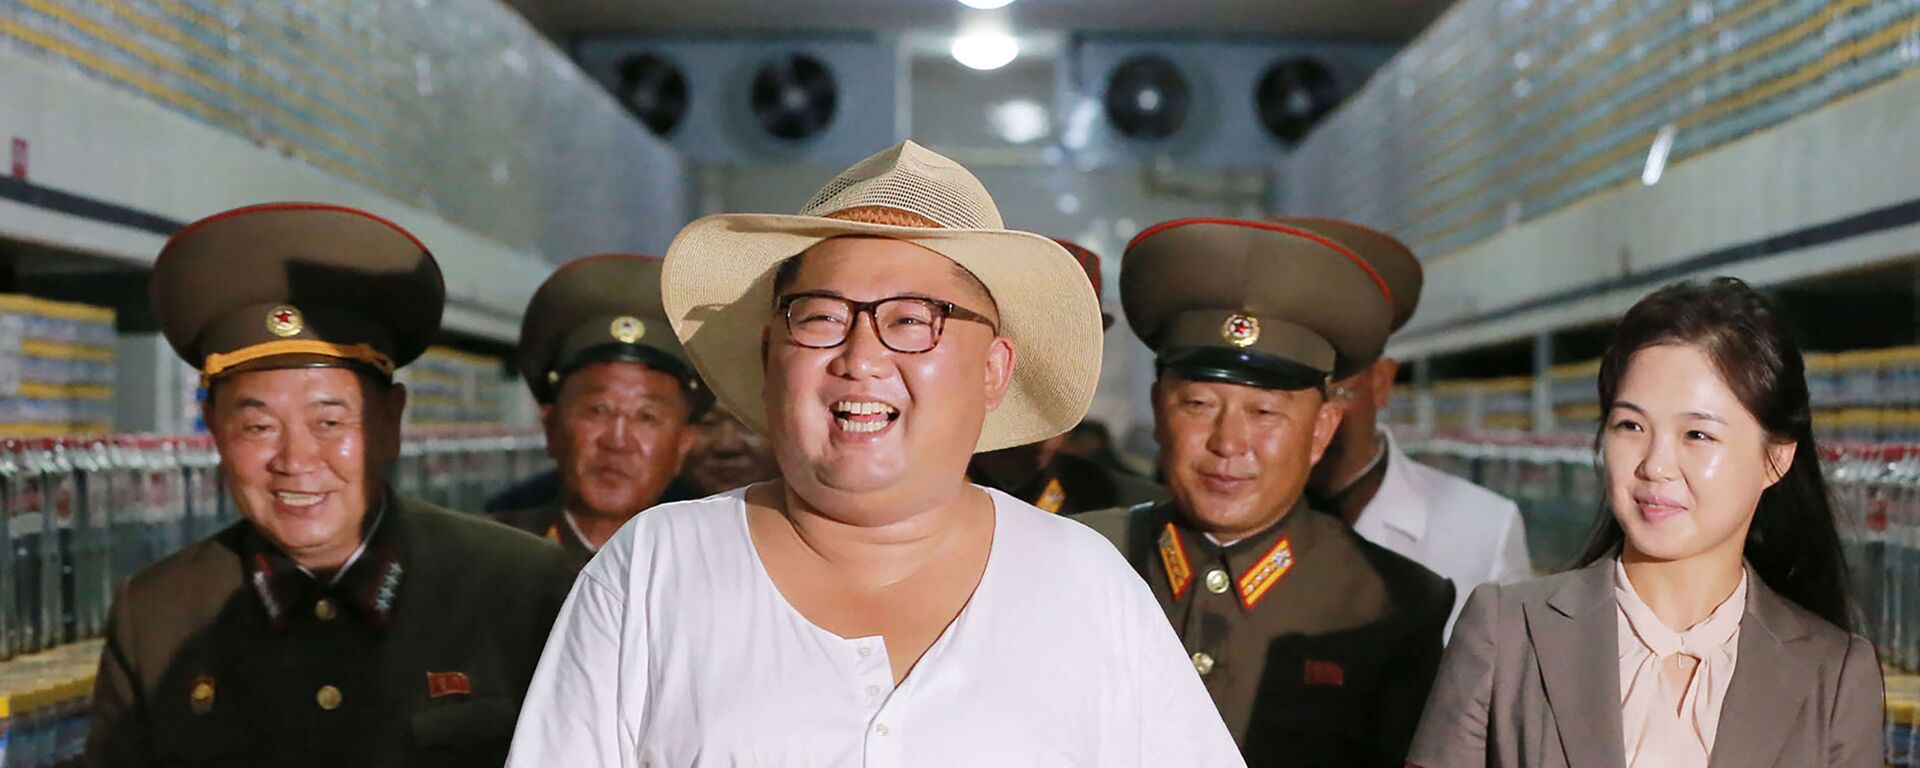 Chủ tịch Kim Jong-un kiểm tra nhà máy ở Kumsanpho, Bắc Triều Tiên - Sputnik Việt Nam, 1920, 16.09.2021